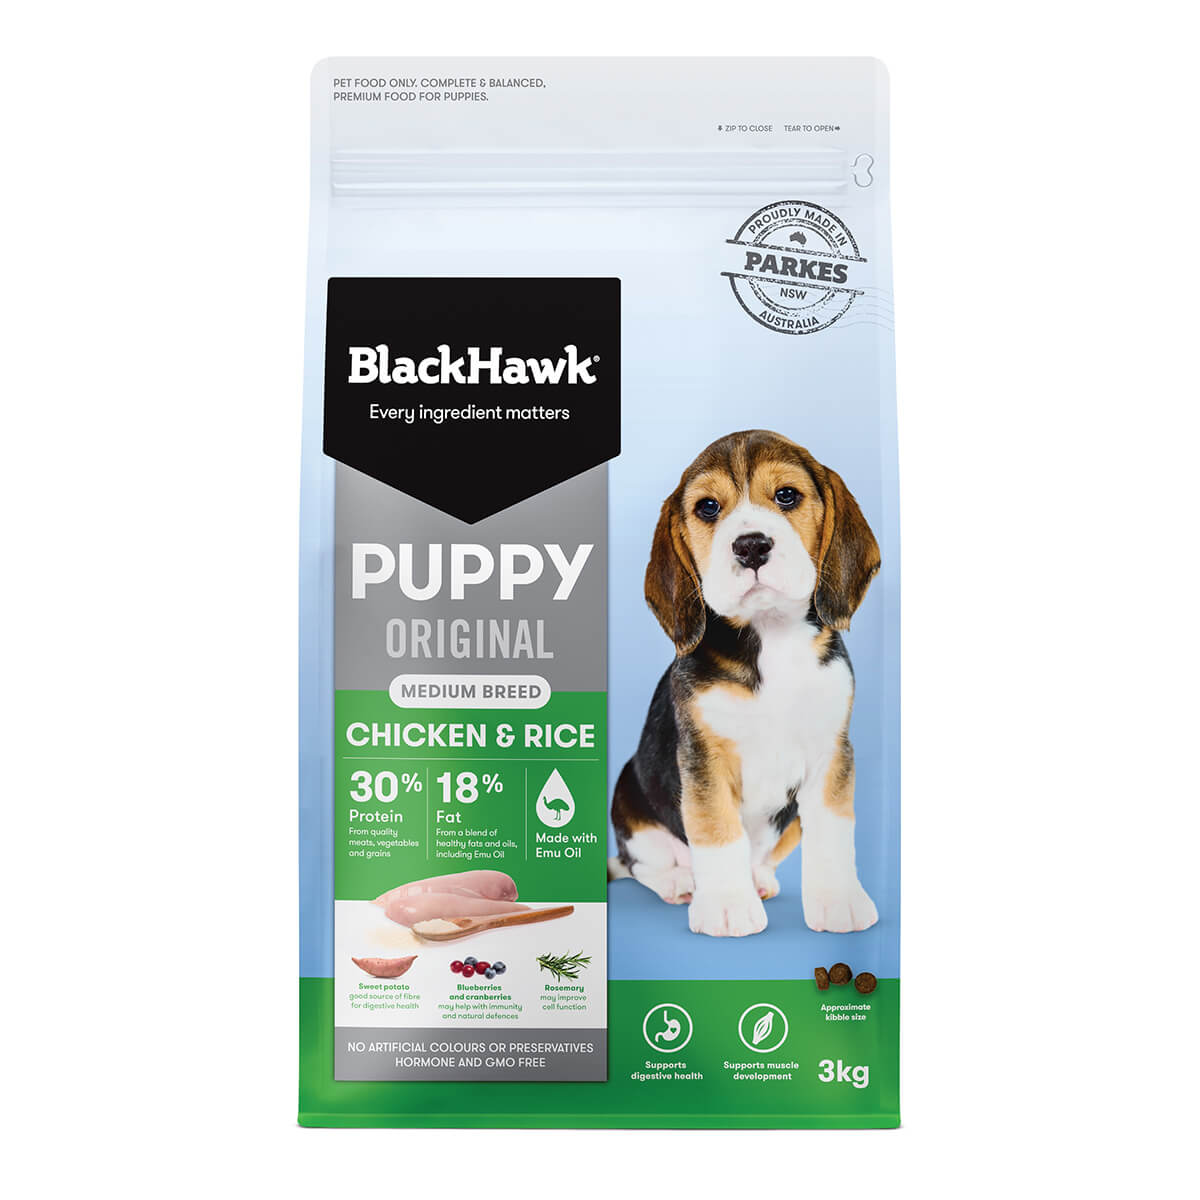 ernstig gesloten Wolf in schaapskleren Black Hawk Puppy Chicken & Rice Medium Breed Dog Food | PETstock